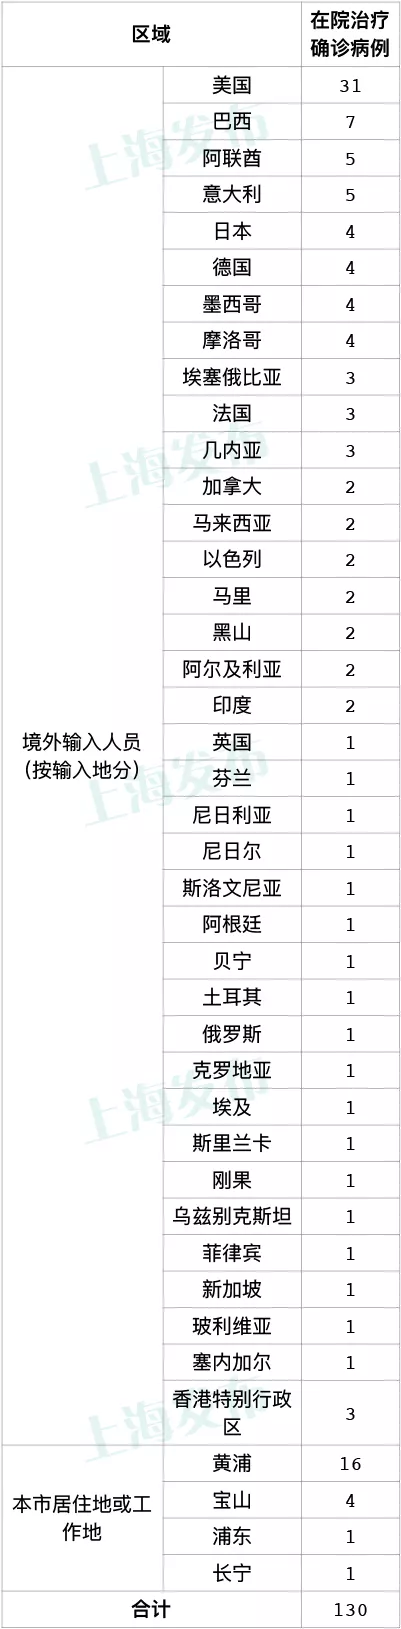 上海昨日无新增本地新冠肺炎确诊病例 新增5例境外输入病例